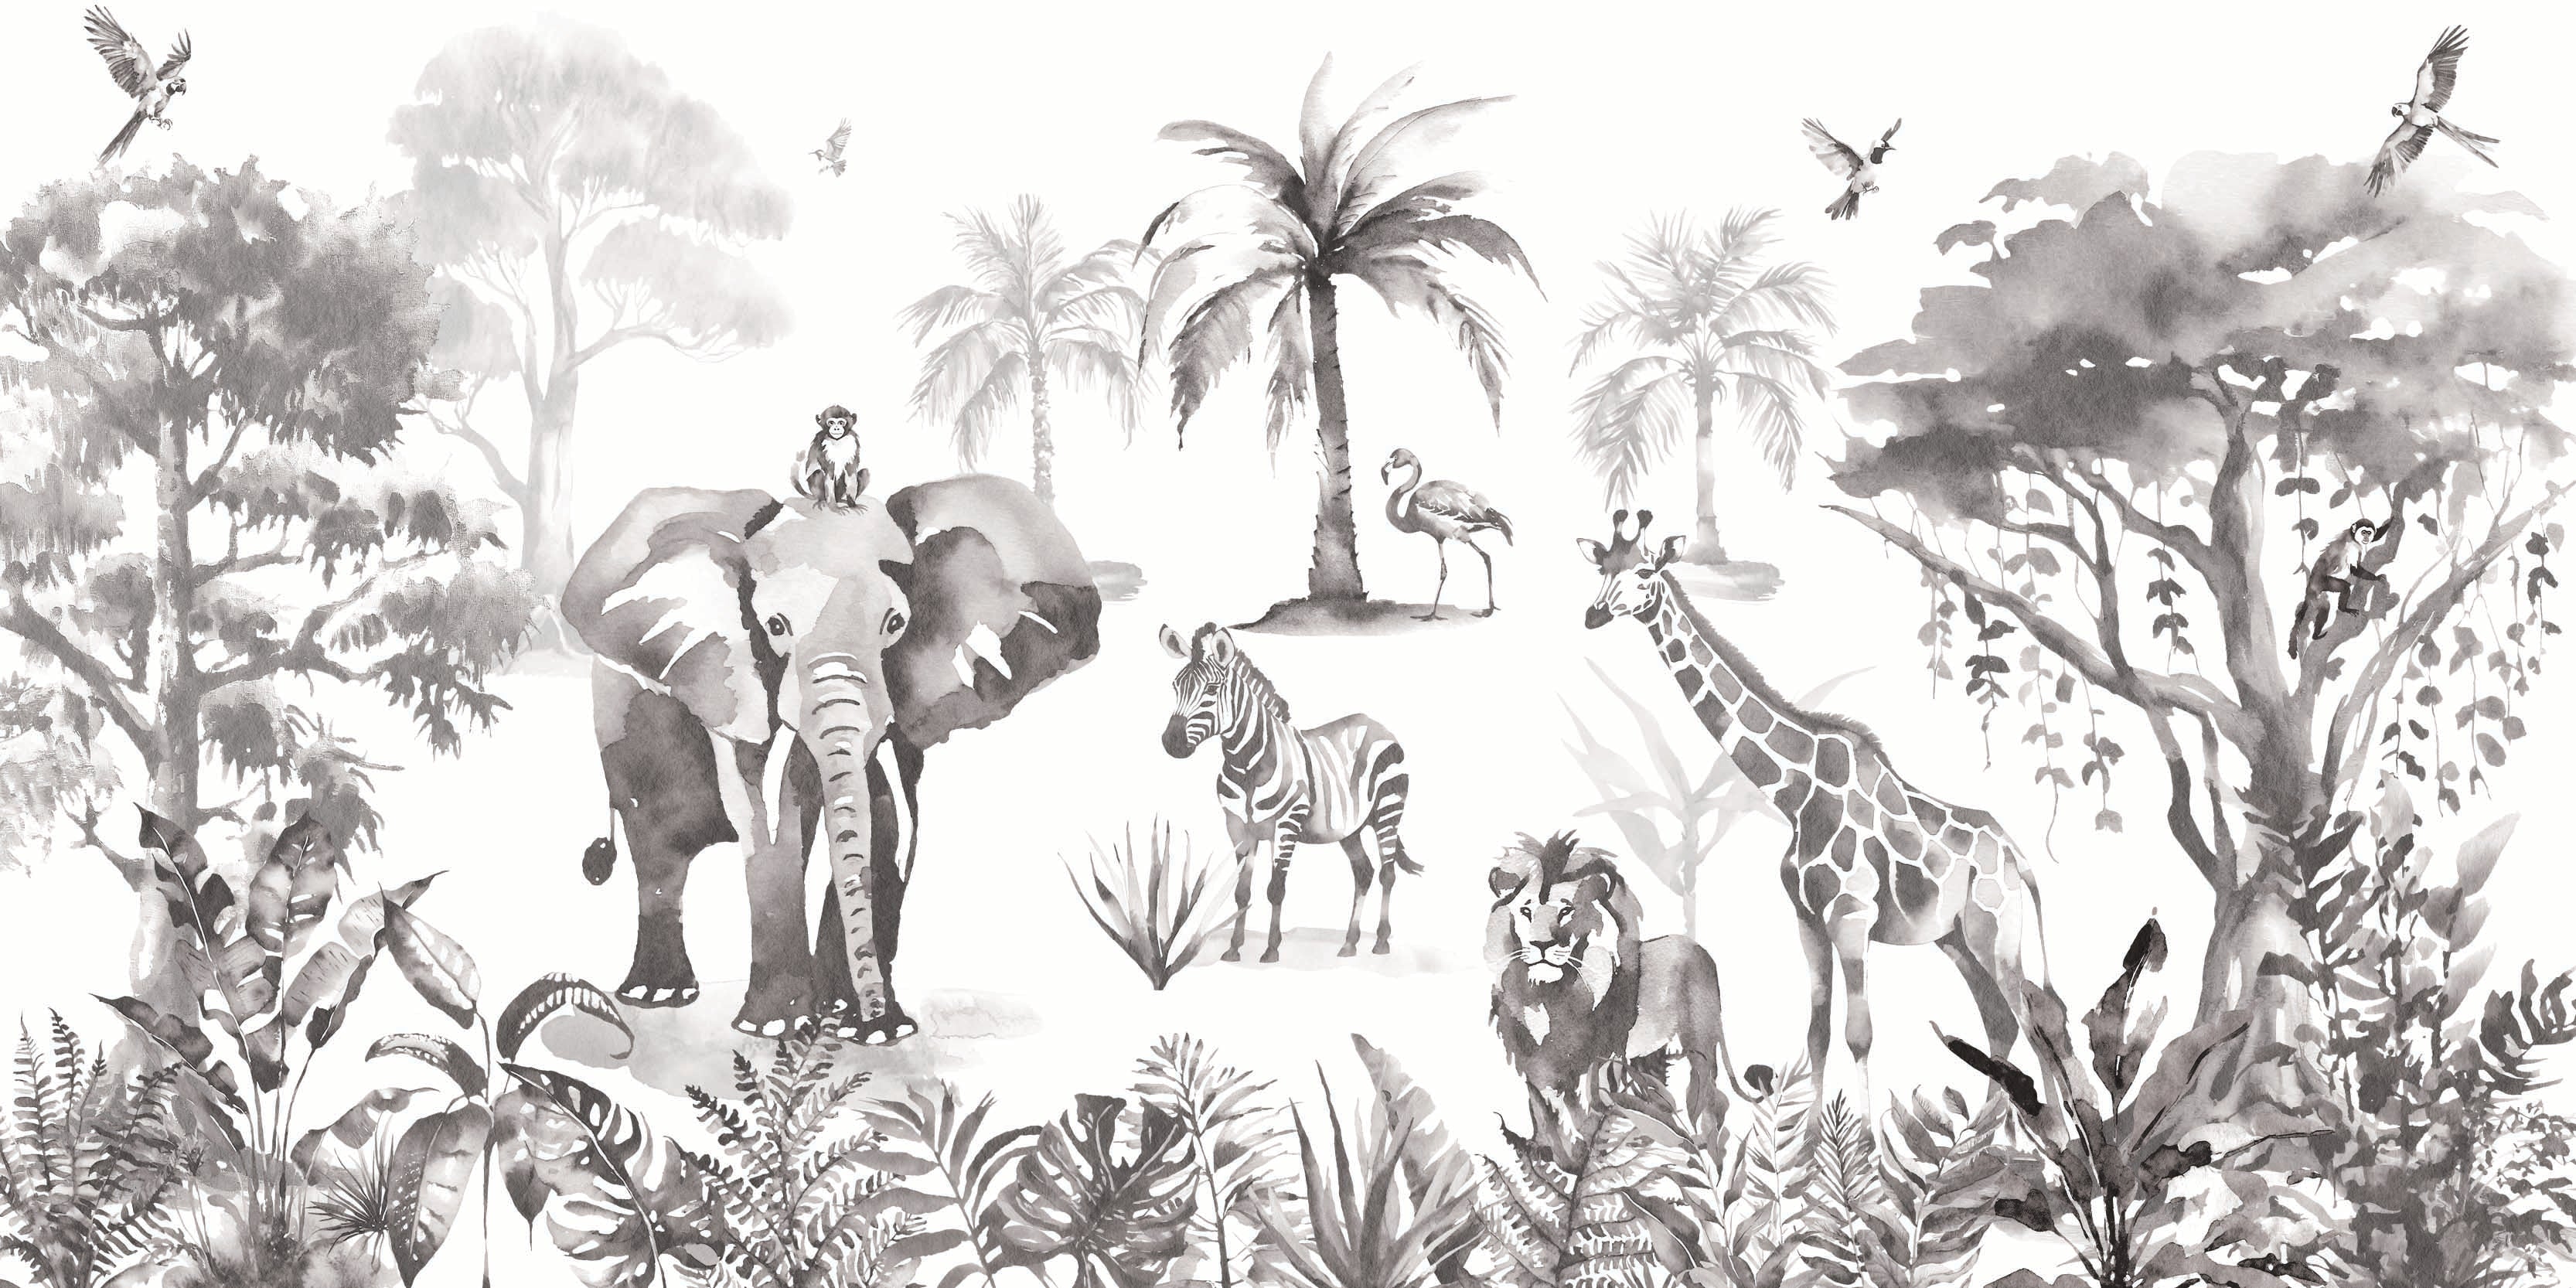 Sango Mono Monochrome Jungle Safari Animal Wallpaper Mural Full Artwork